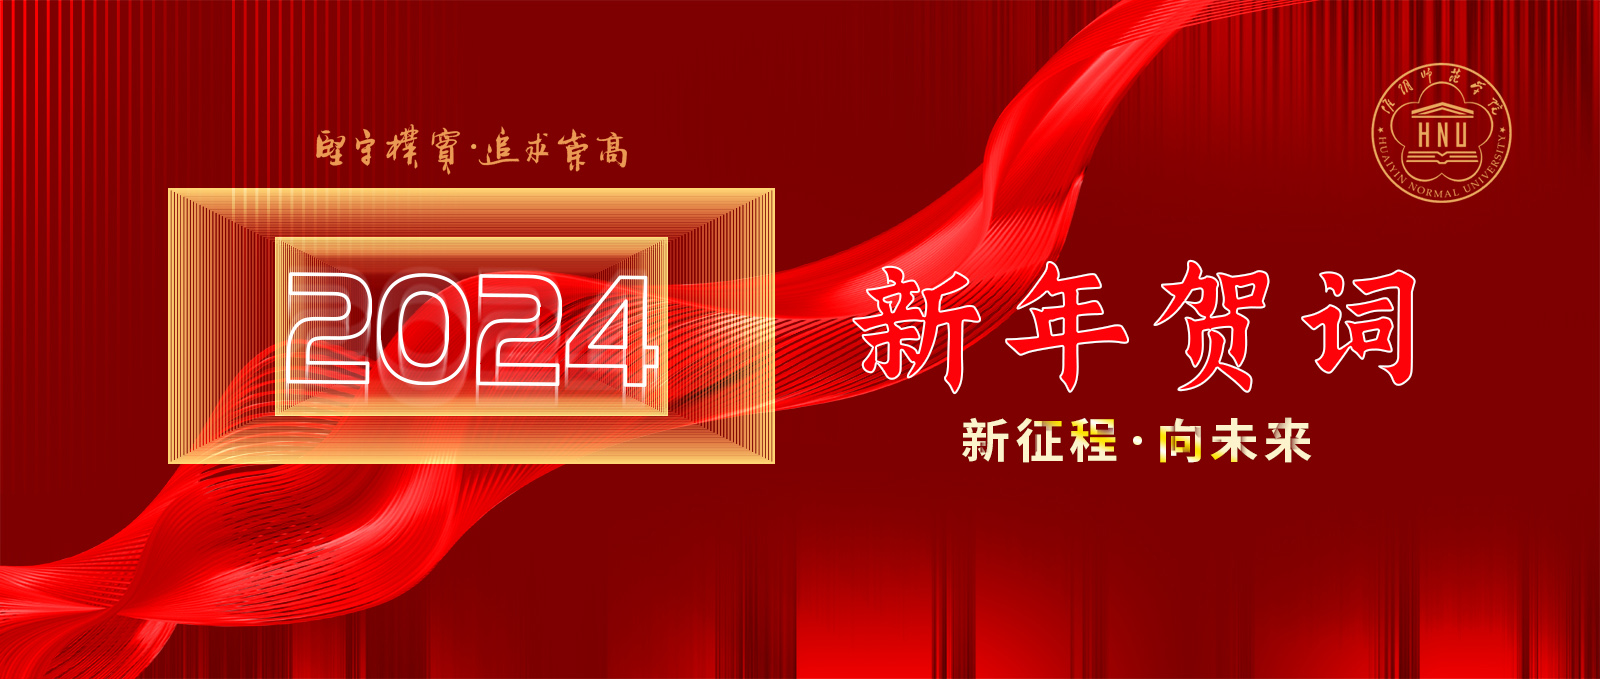 66体育直播网(中国)有限公司2024新年贺词